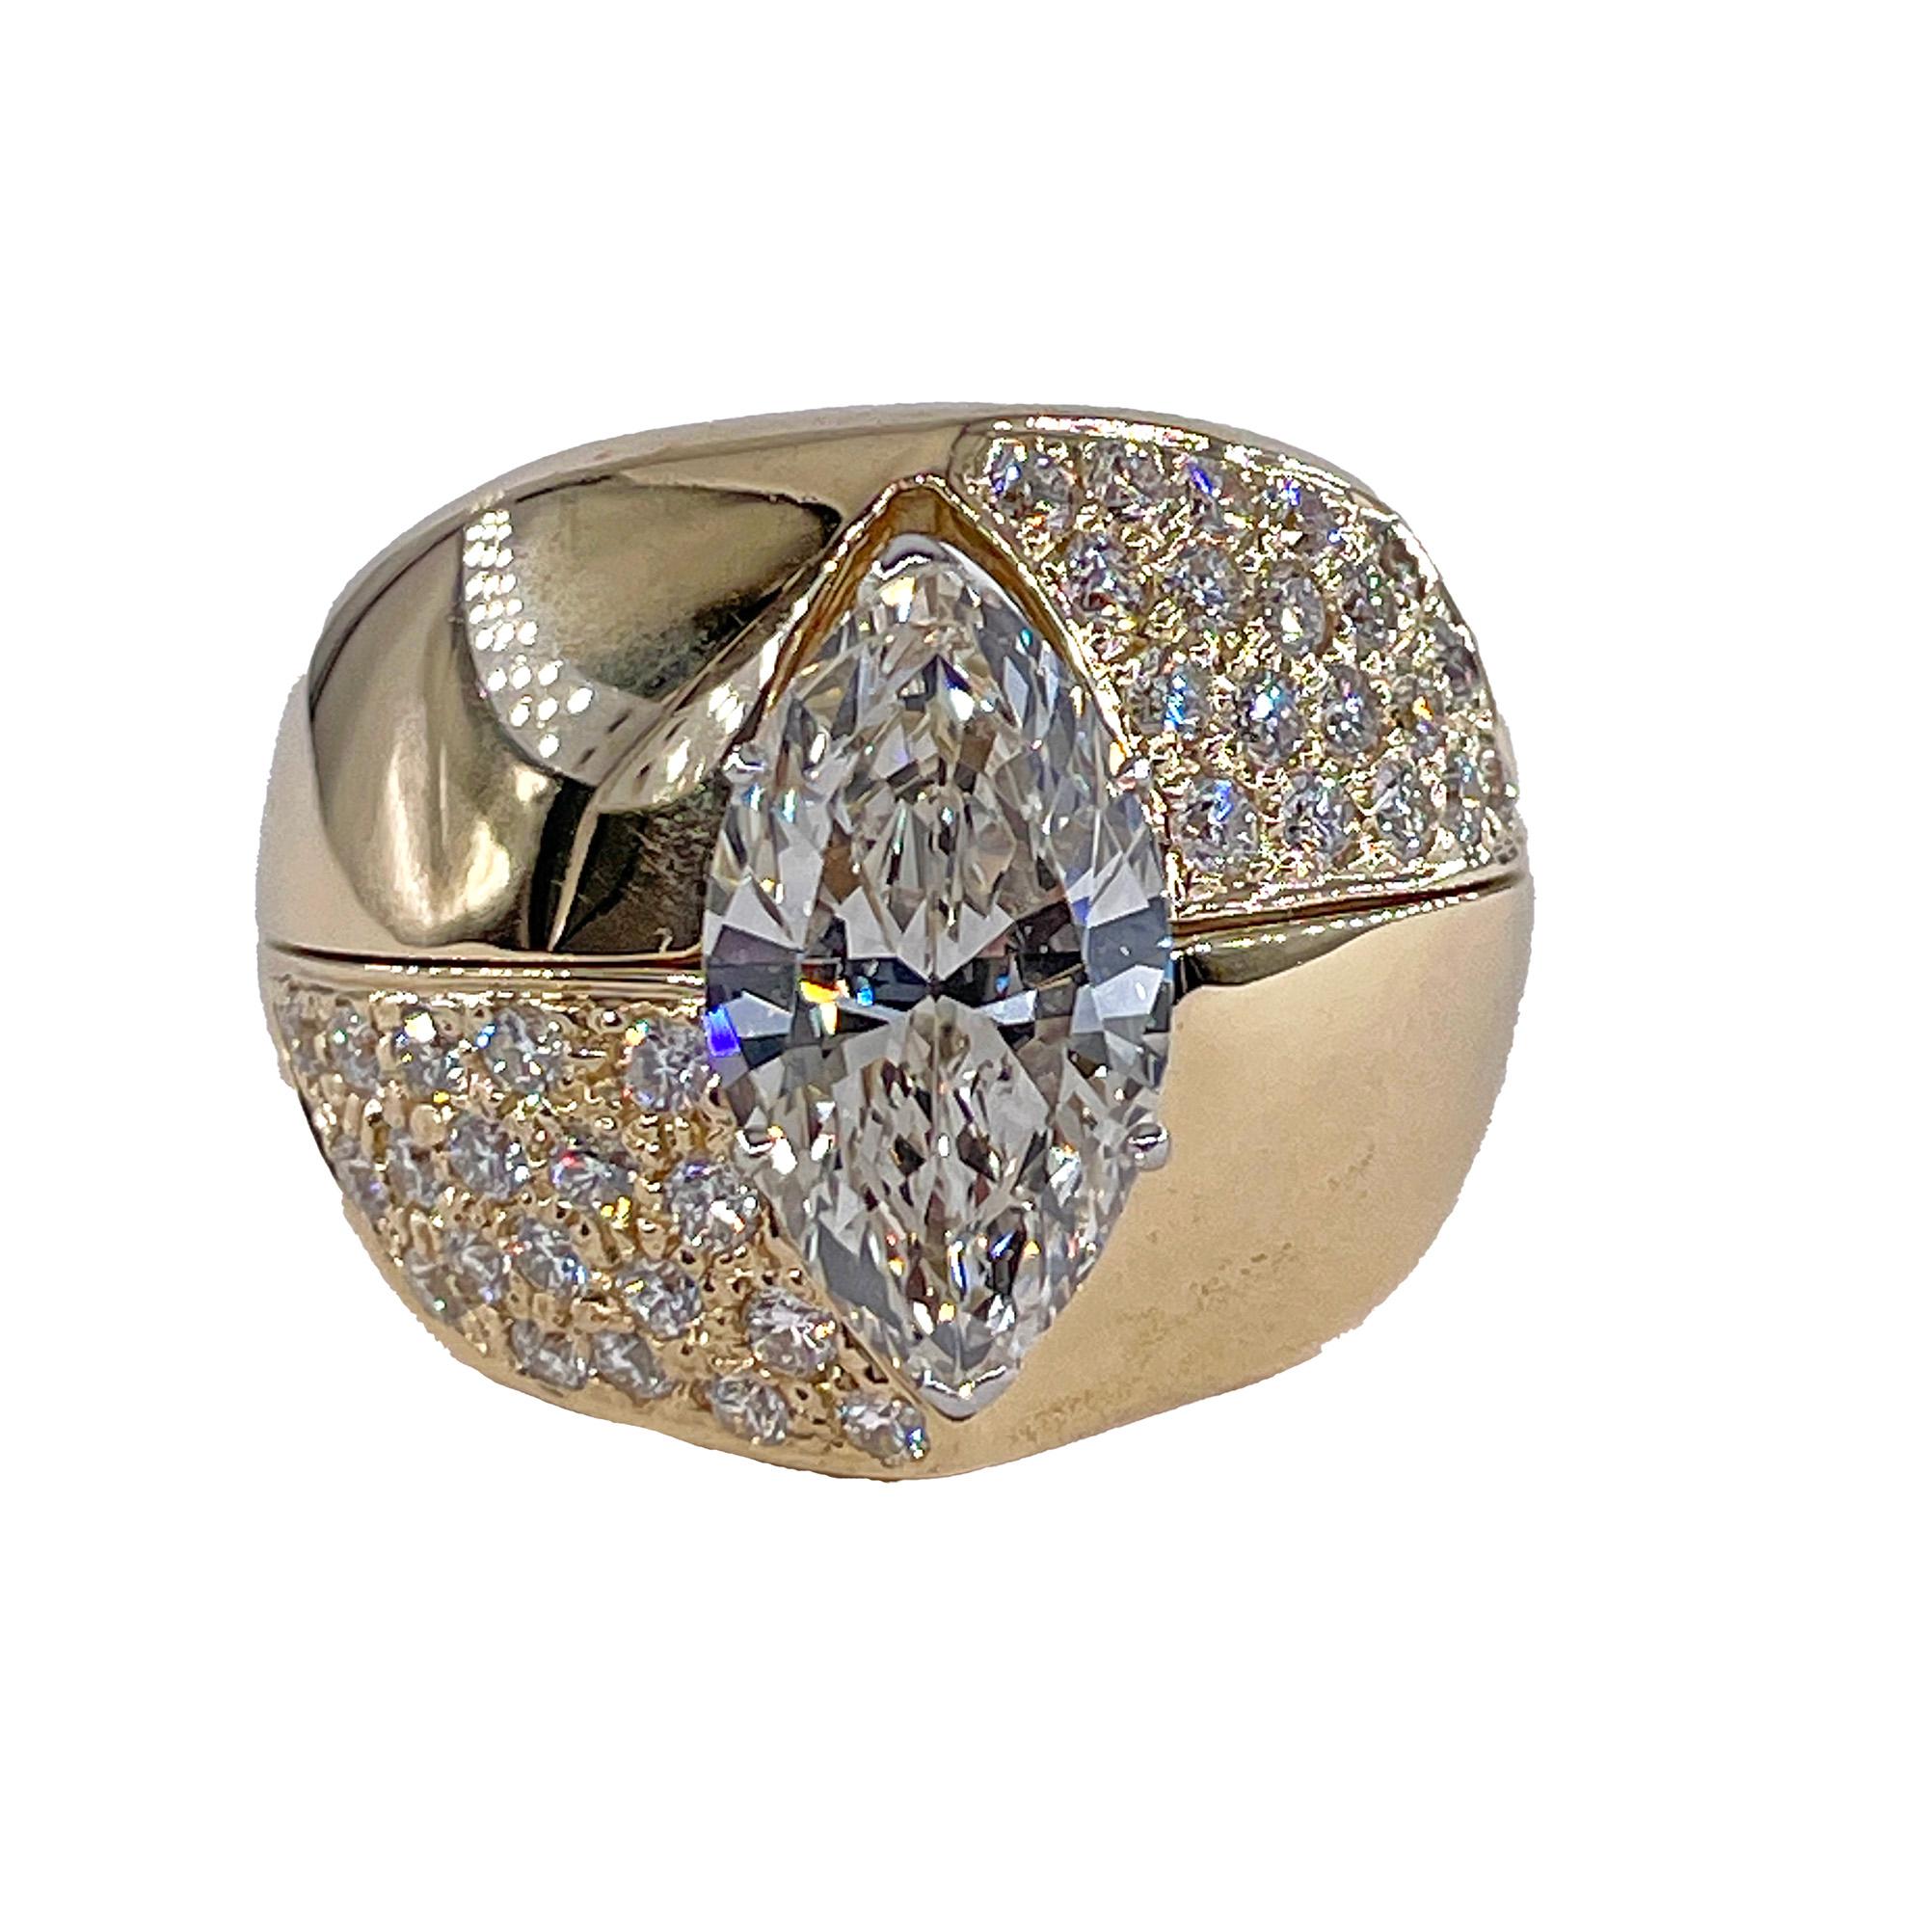 Vintage Diamant Verlobung Drei Stein Marquise Diamant Platin Ring mit Fitted 18K Gelbgold Diamant Jacke

Die 